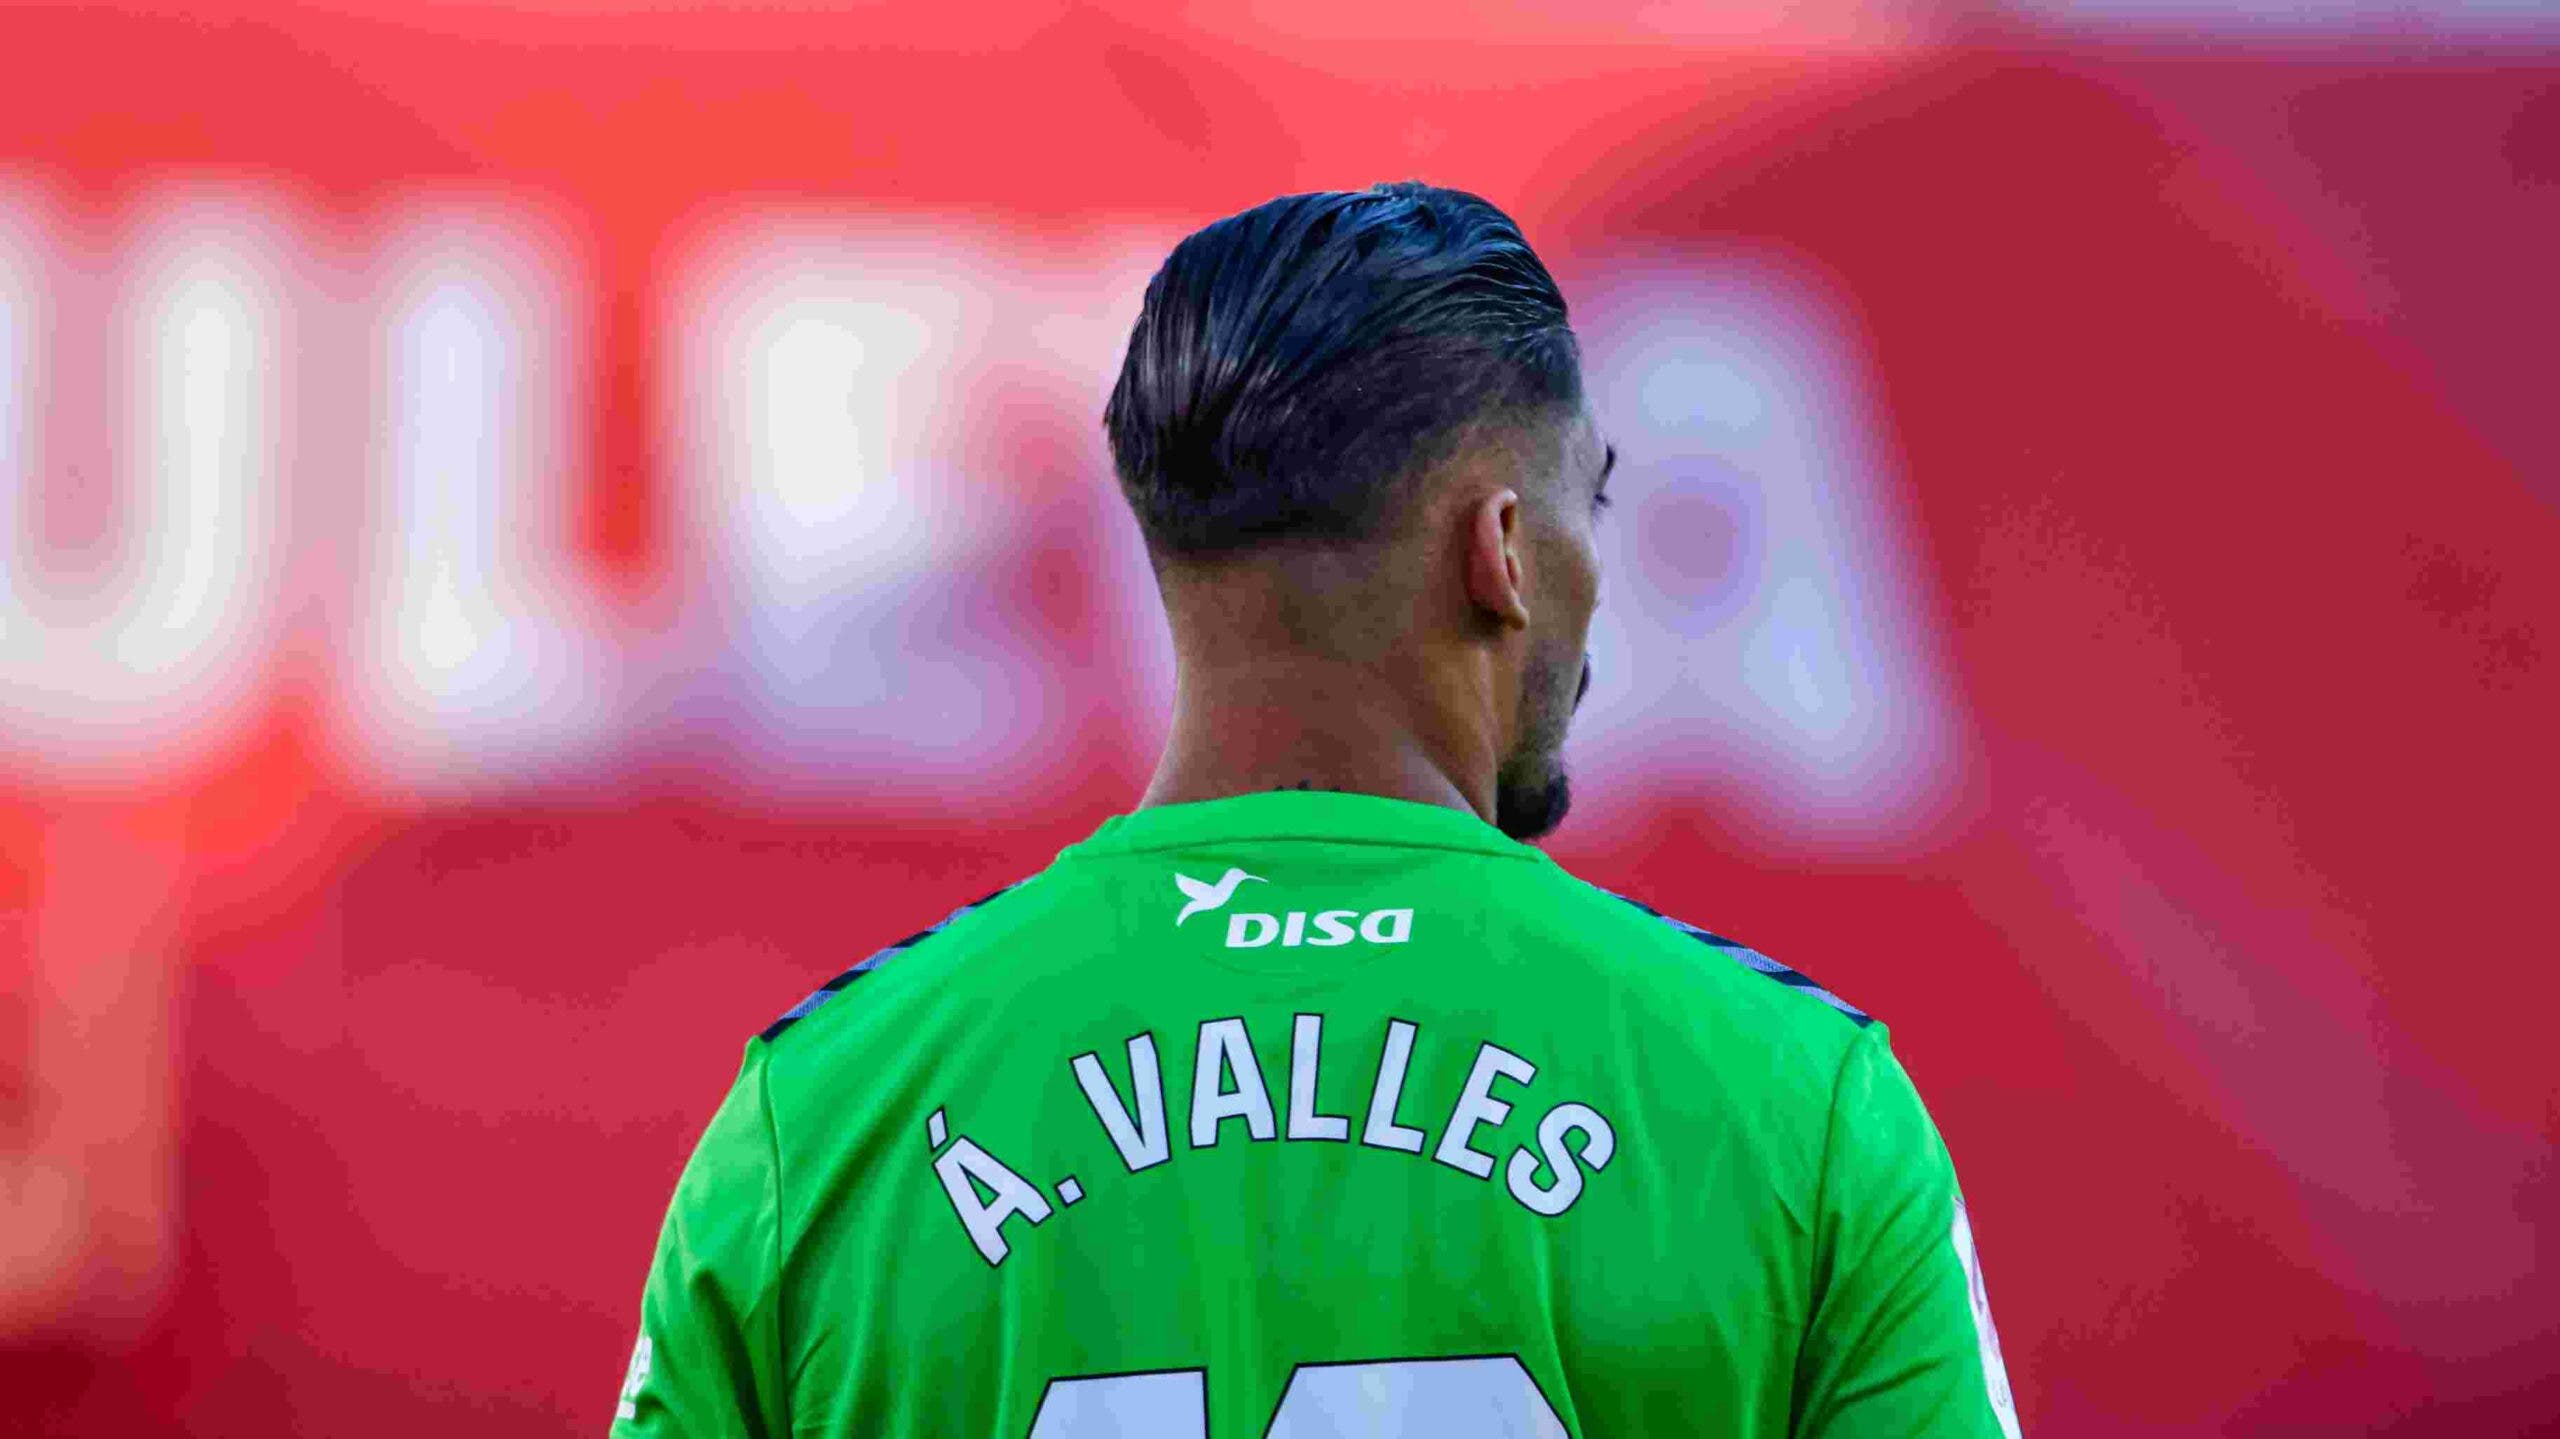 Álvaro Valles Selección